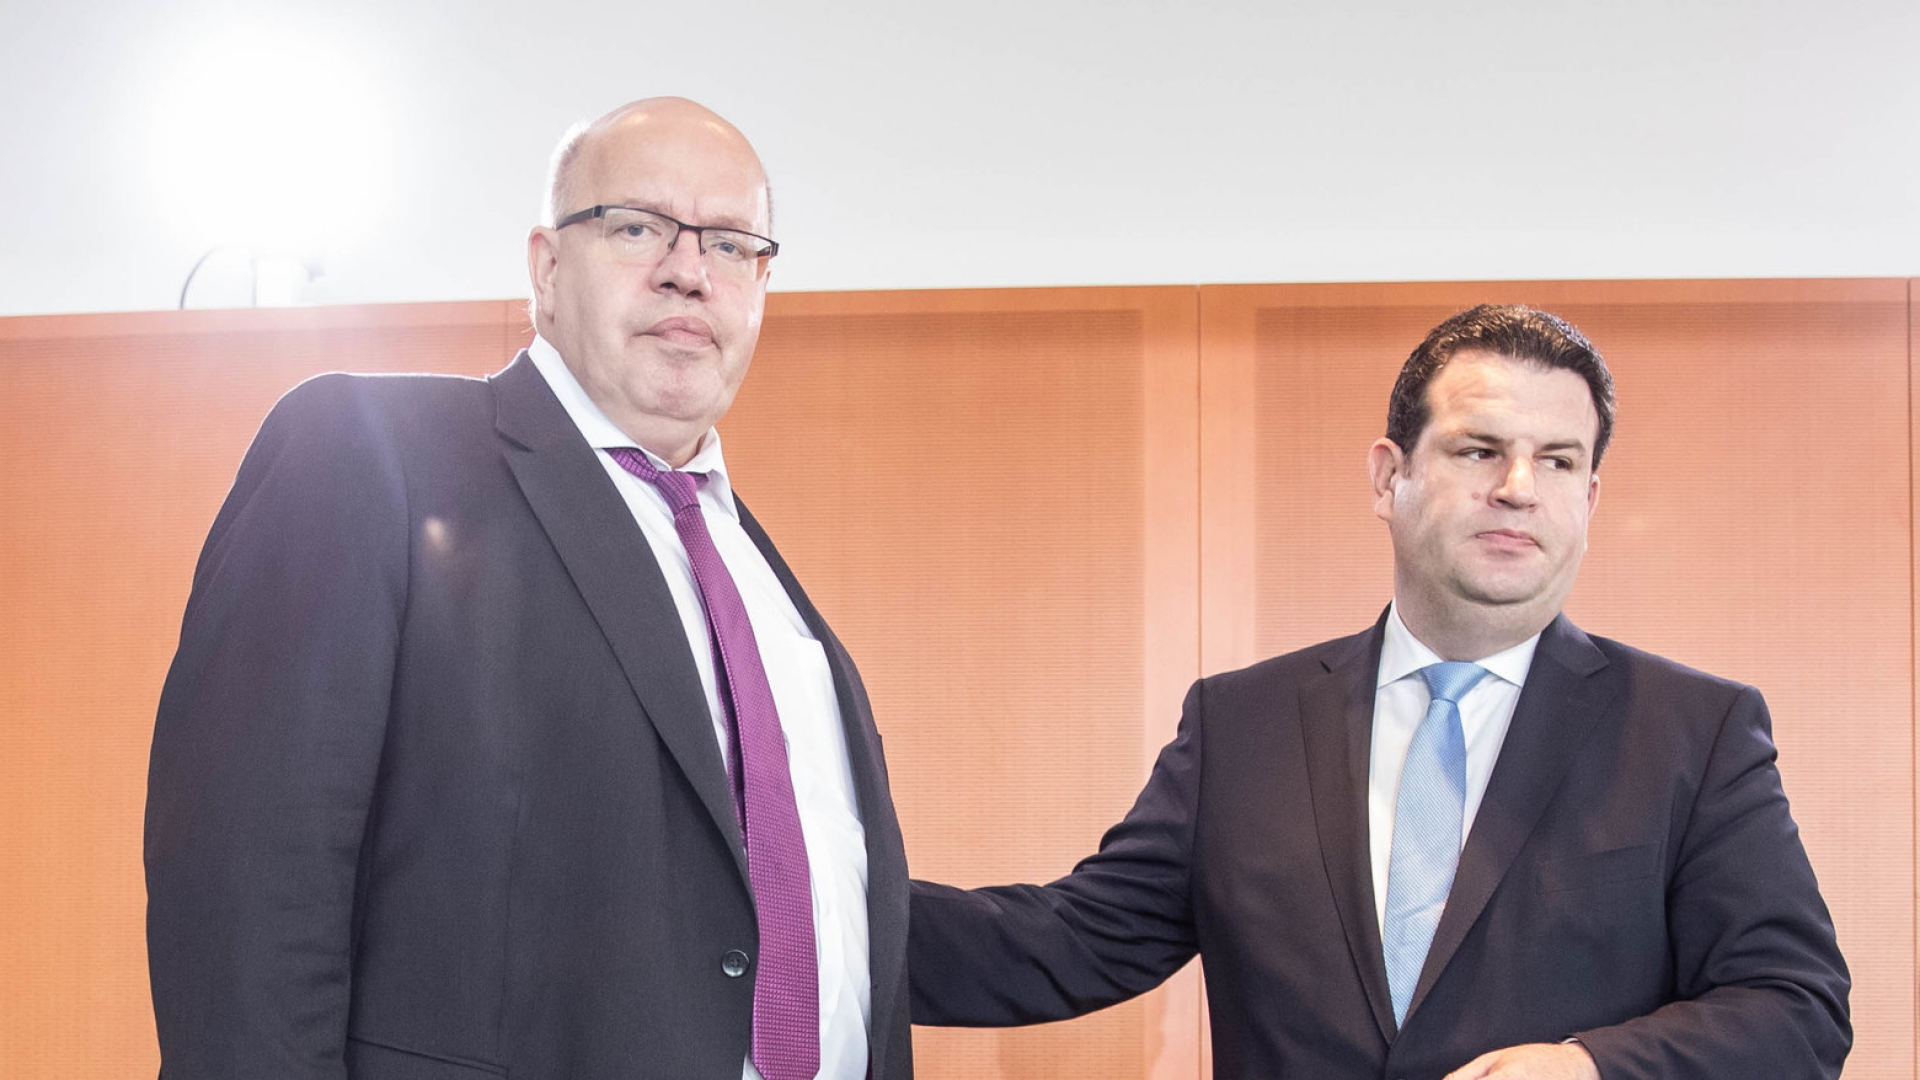 Arbeitsminister Heil und Wirtschaftsminister Altmaier bei einer Kabinettssitzung. | dpa